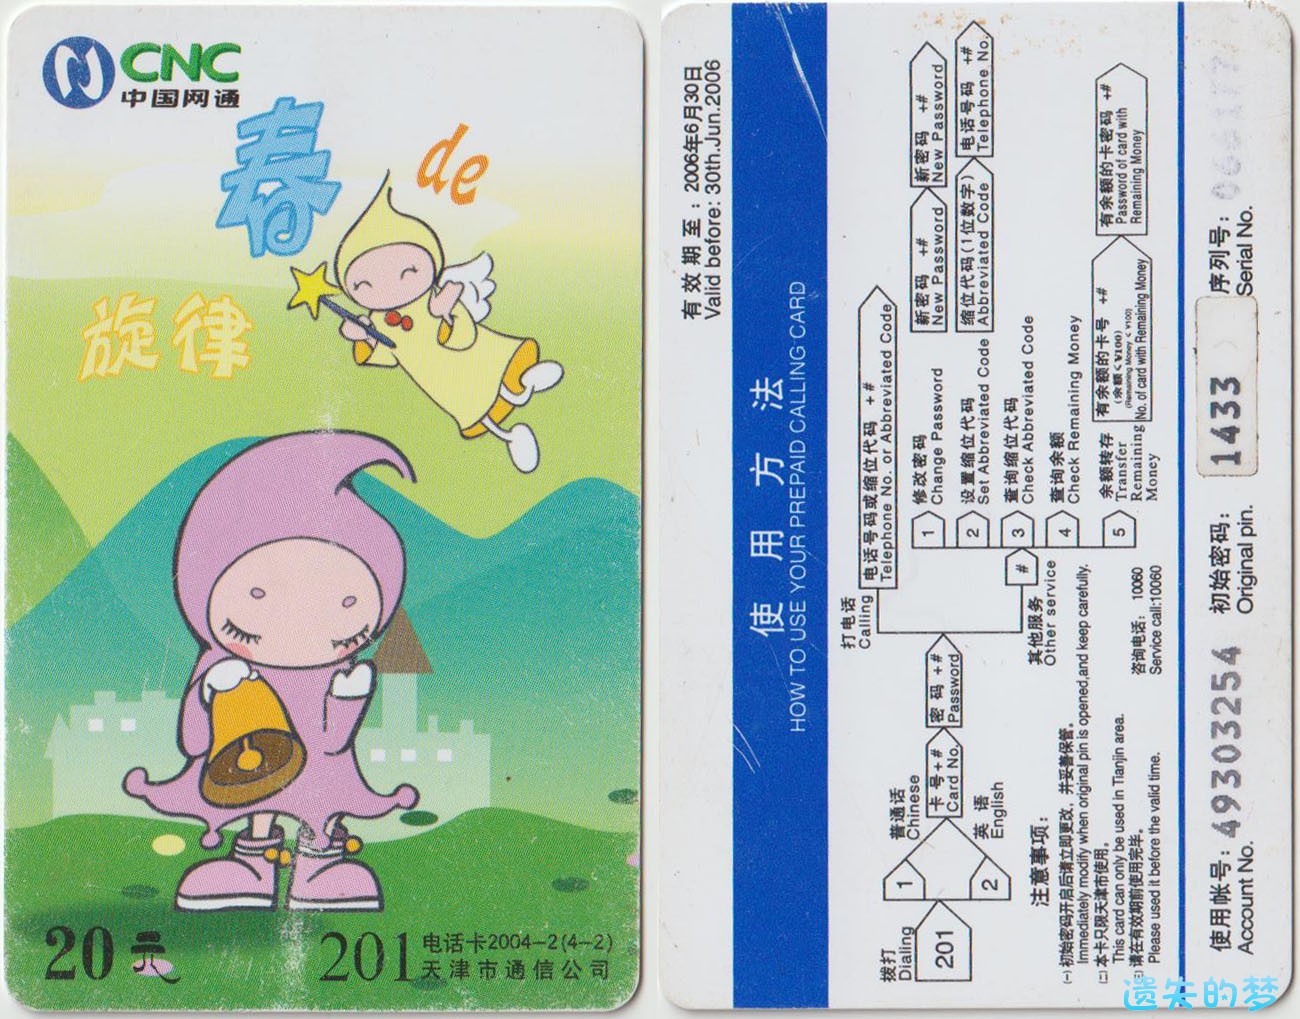 201电话卡2004-2(4-2).jpg